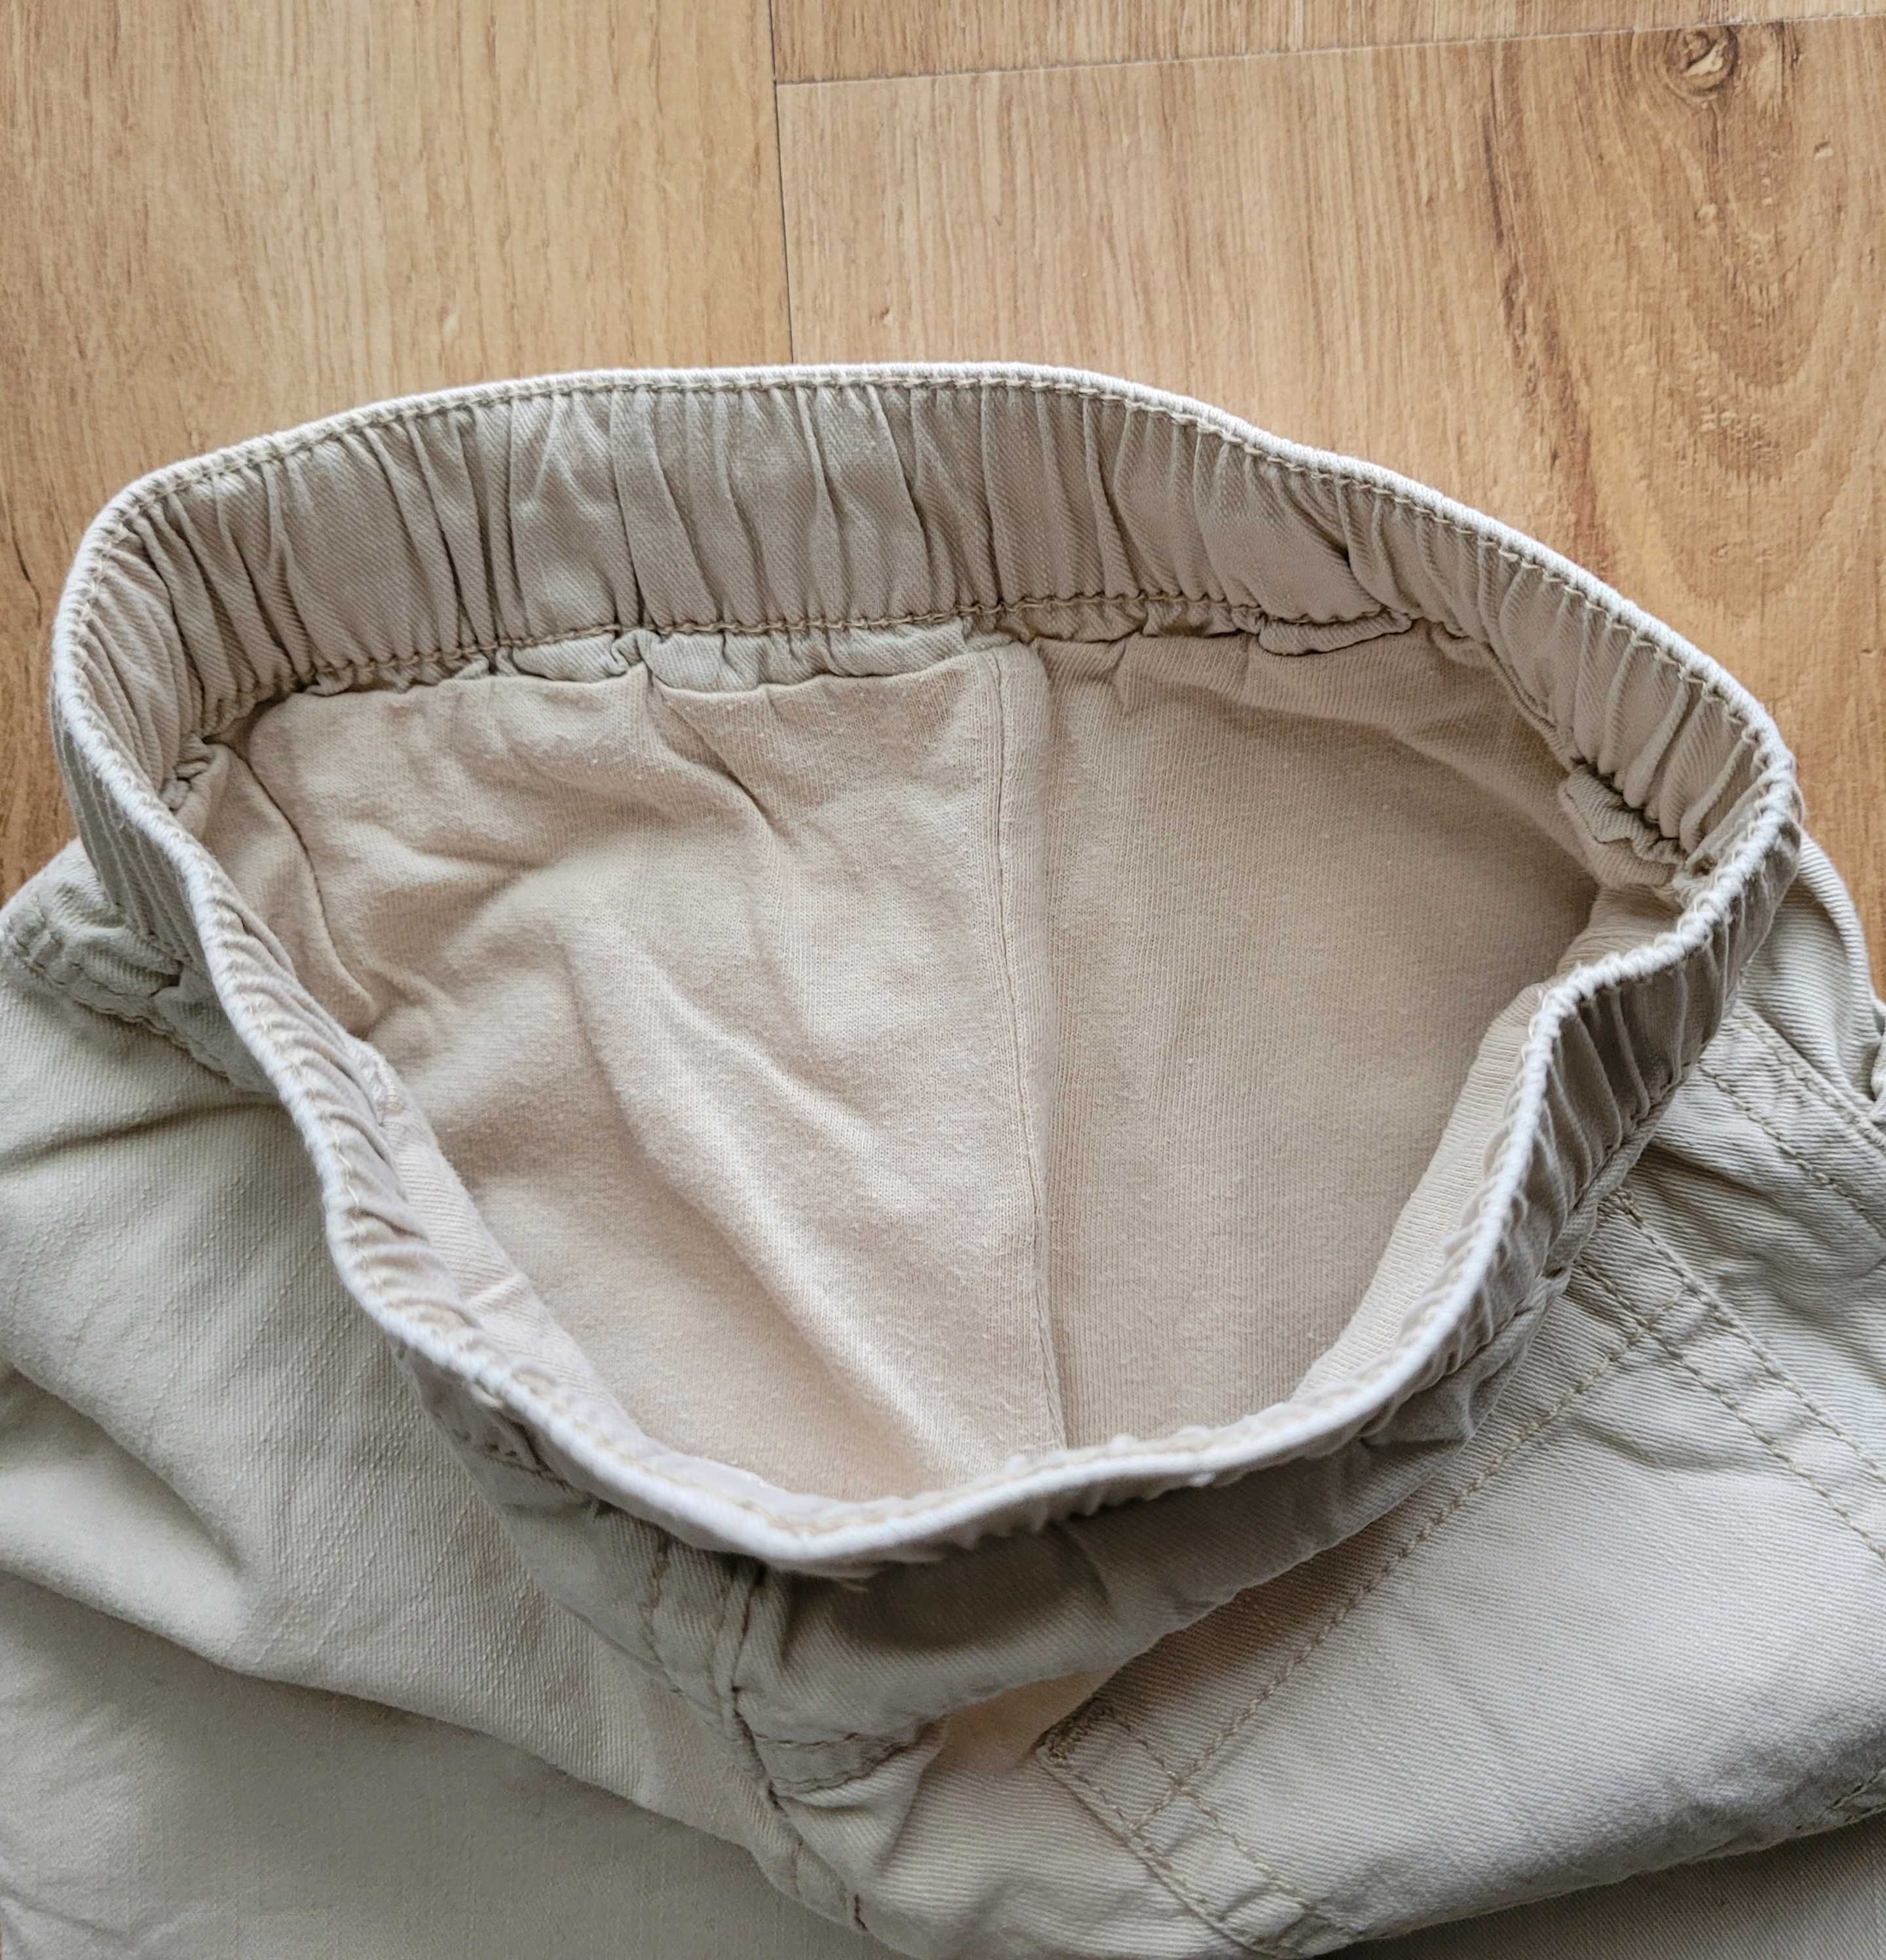 Bawełniane spodnie 68 3-6 długie niemowlęce unisex + śliniak Next